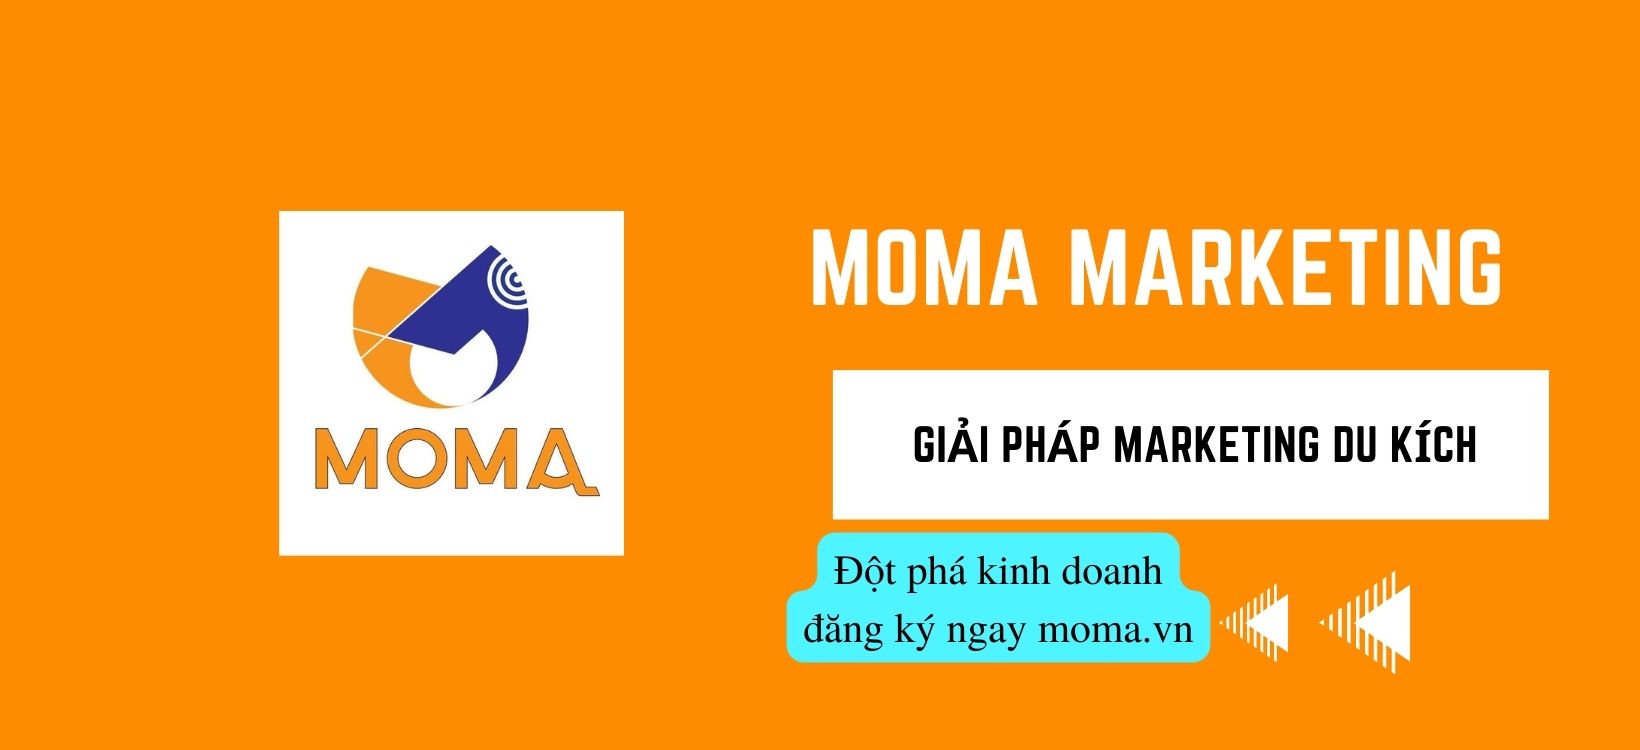 Hướng dẫn sử dụng moma digital marketing trong quảng cáo đa nền tảng